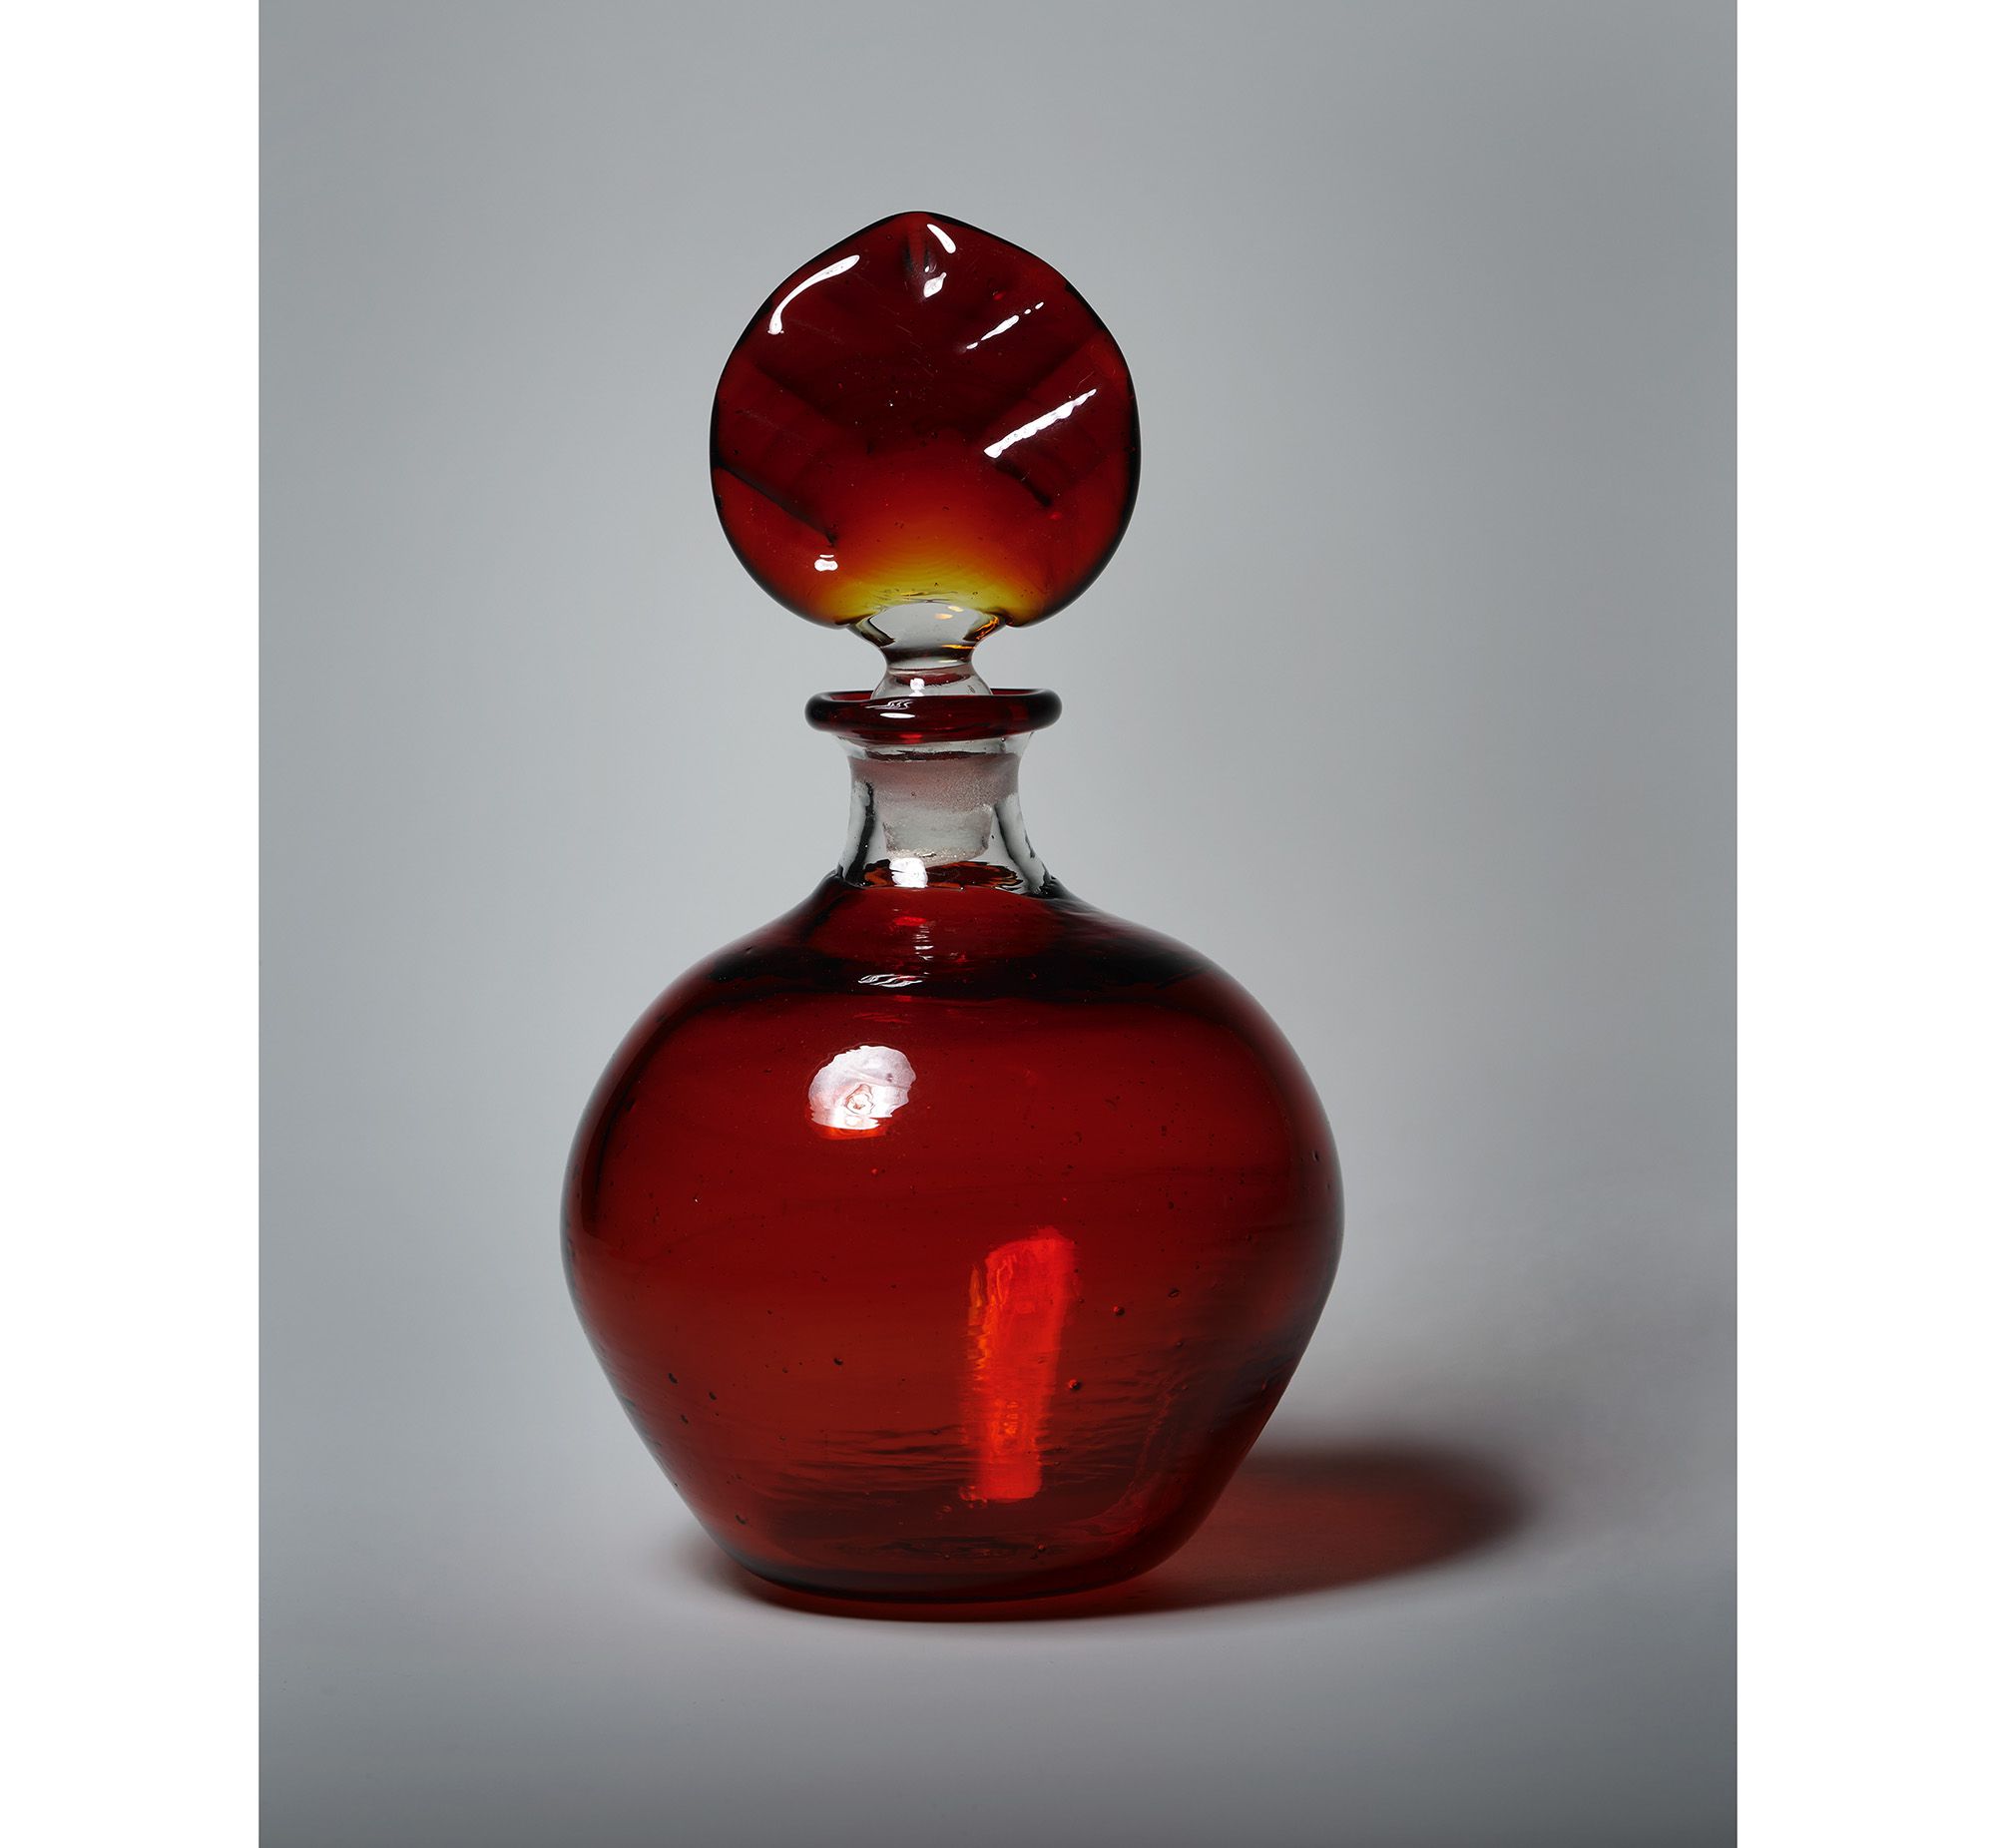 宙吹きガラスならではの自然なゆがみのあるフォルム、艶やかな赤が魅力的な香水瓶。